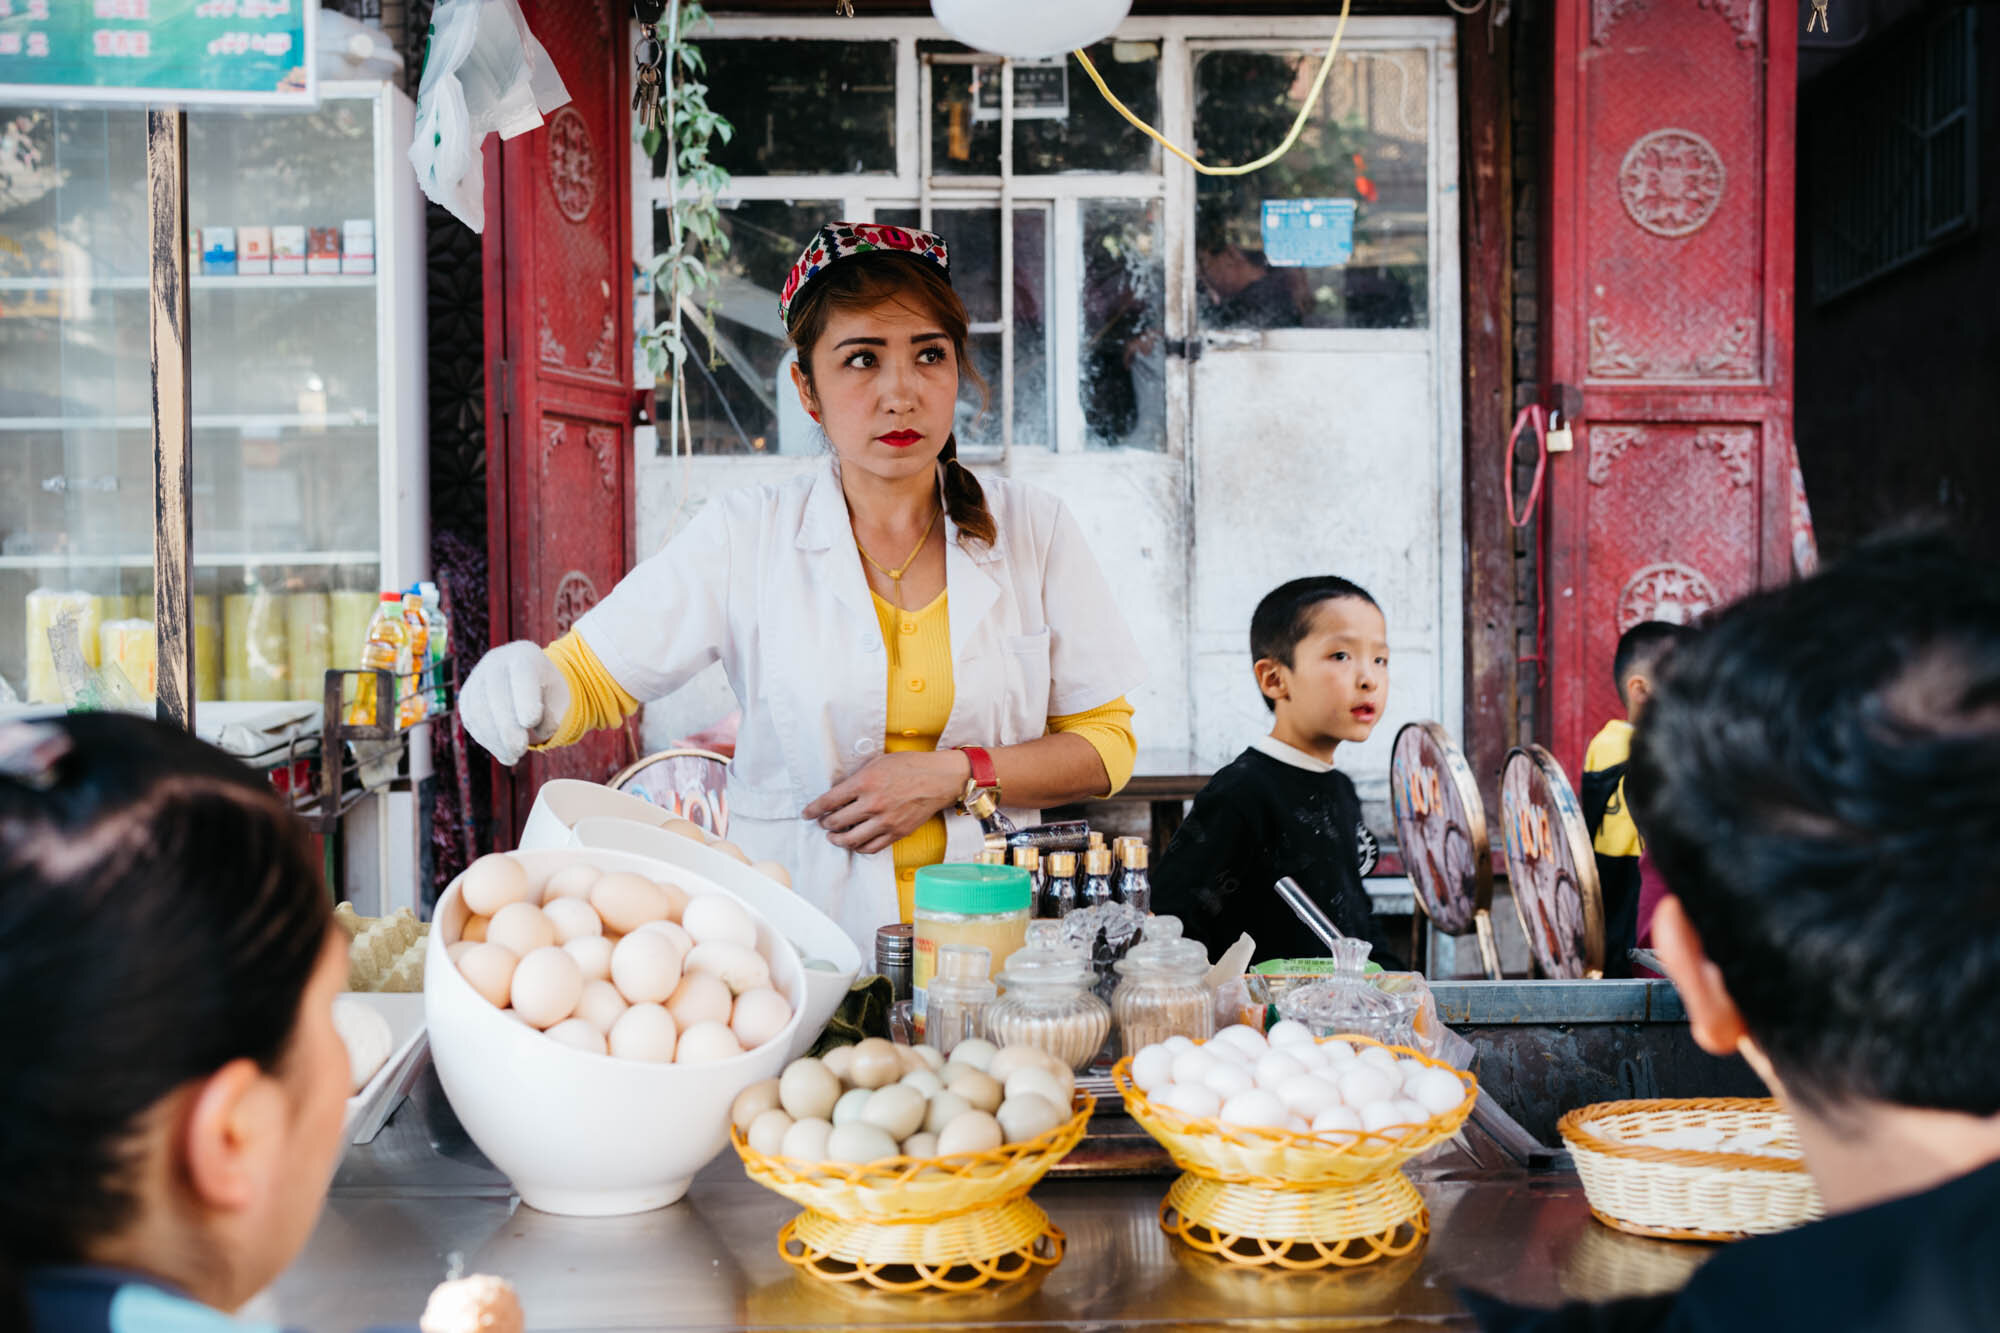  An Uyghur shopkeeper 